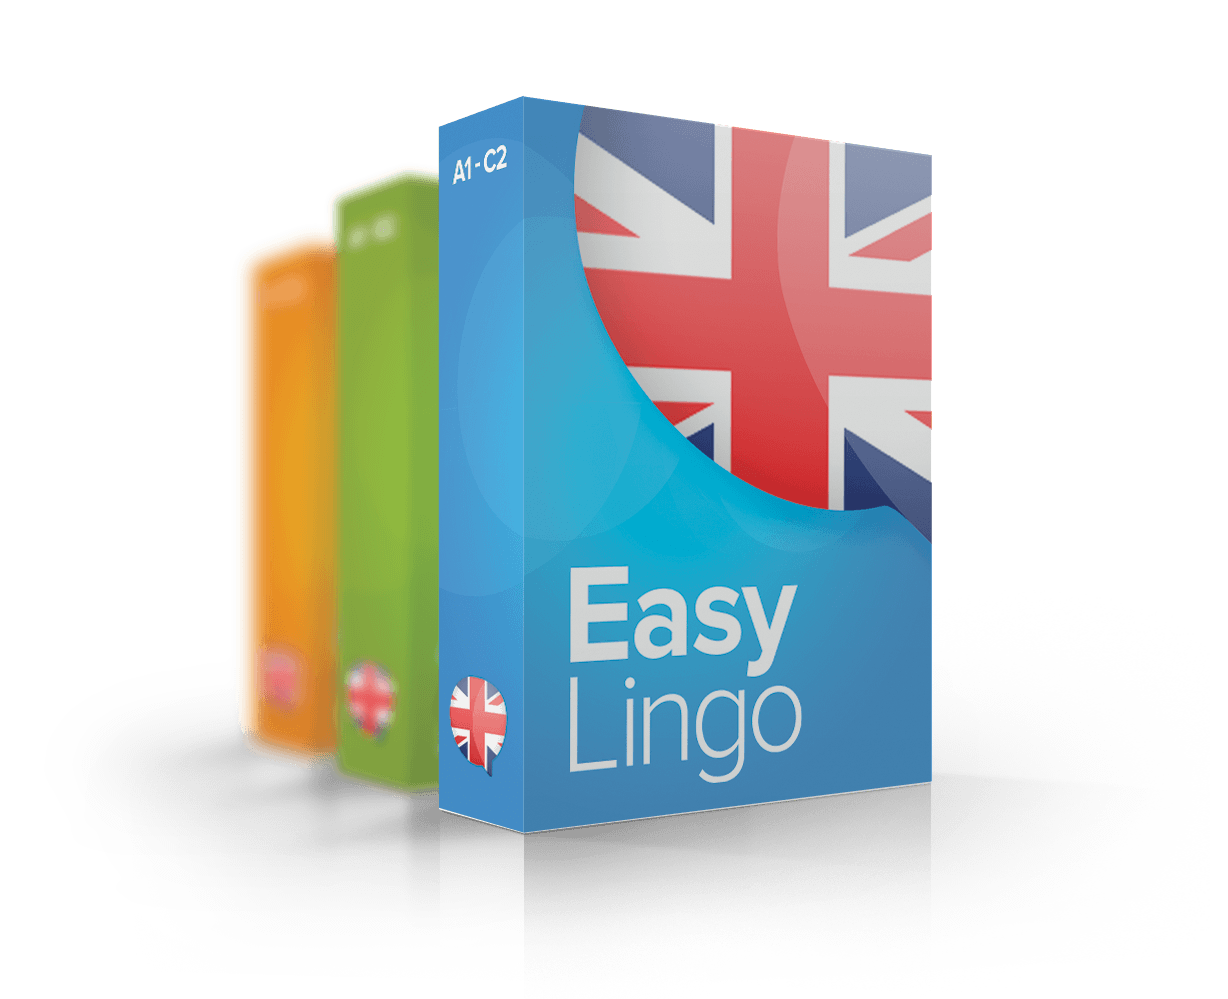 Un solo paquete, 10 cursos de inglés: 6 niveles de idioma. ¡Elige un plan y disfrútalo!